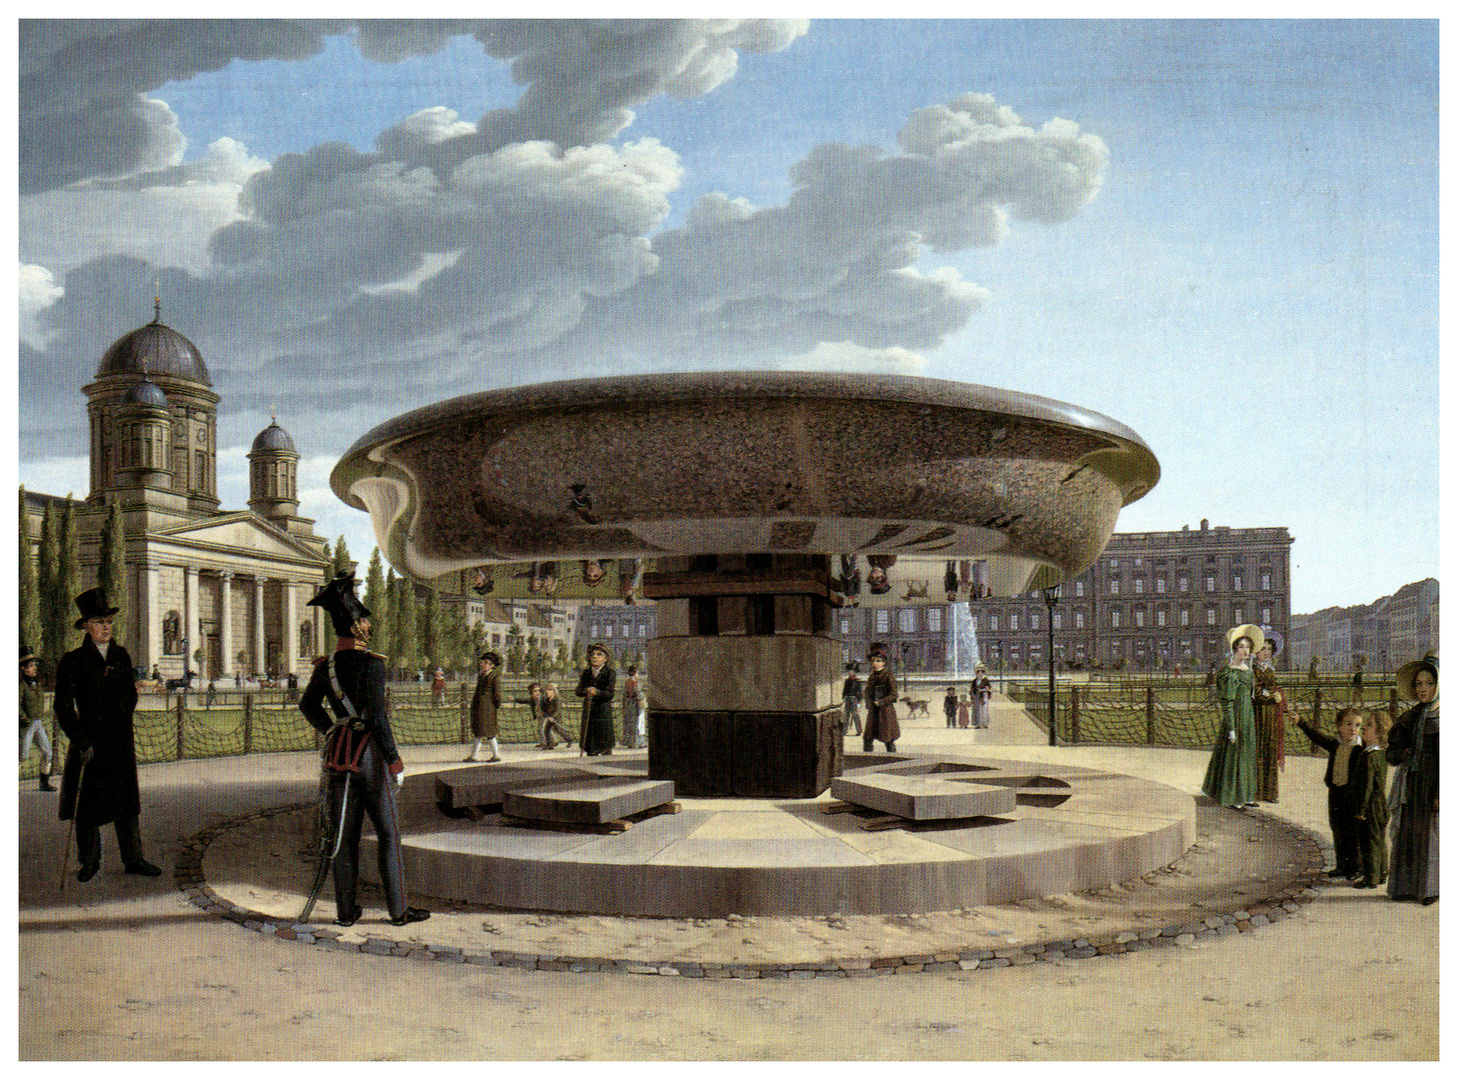 Johann Erdmann Hummel, Die Granitschale im Berliner Lustgarten, 1831